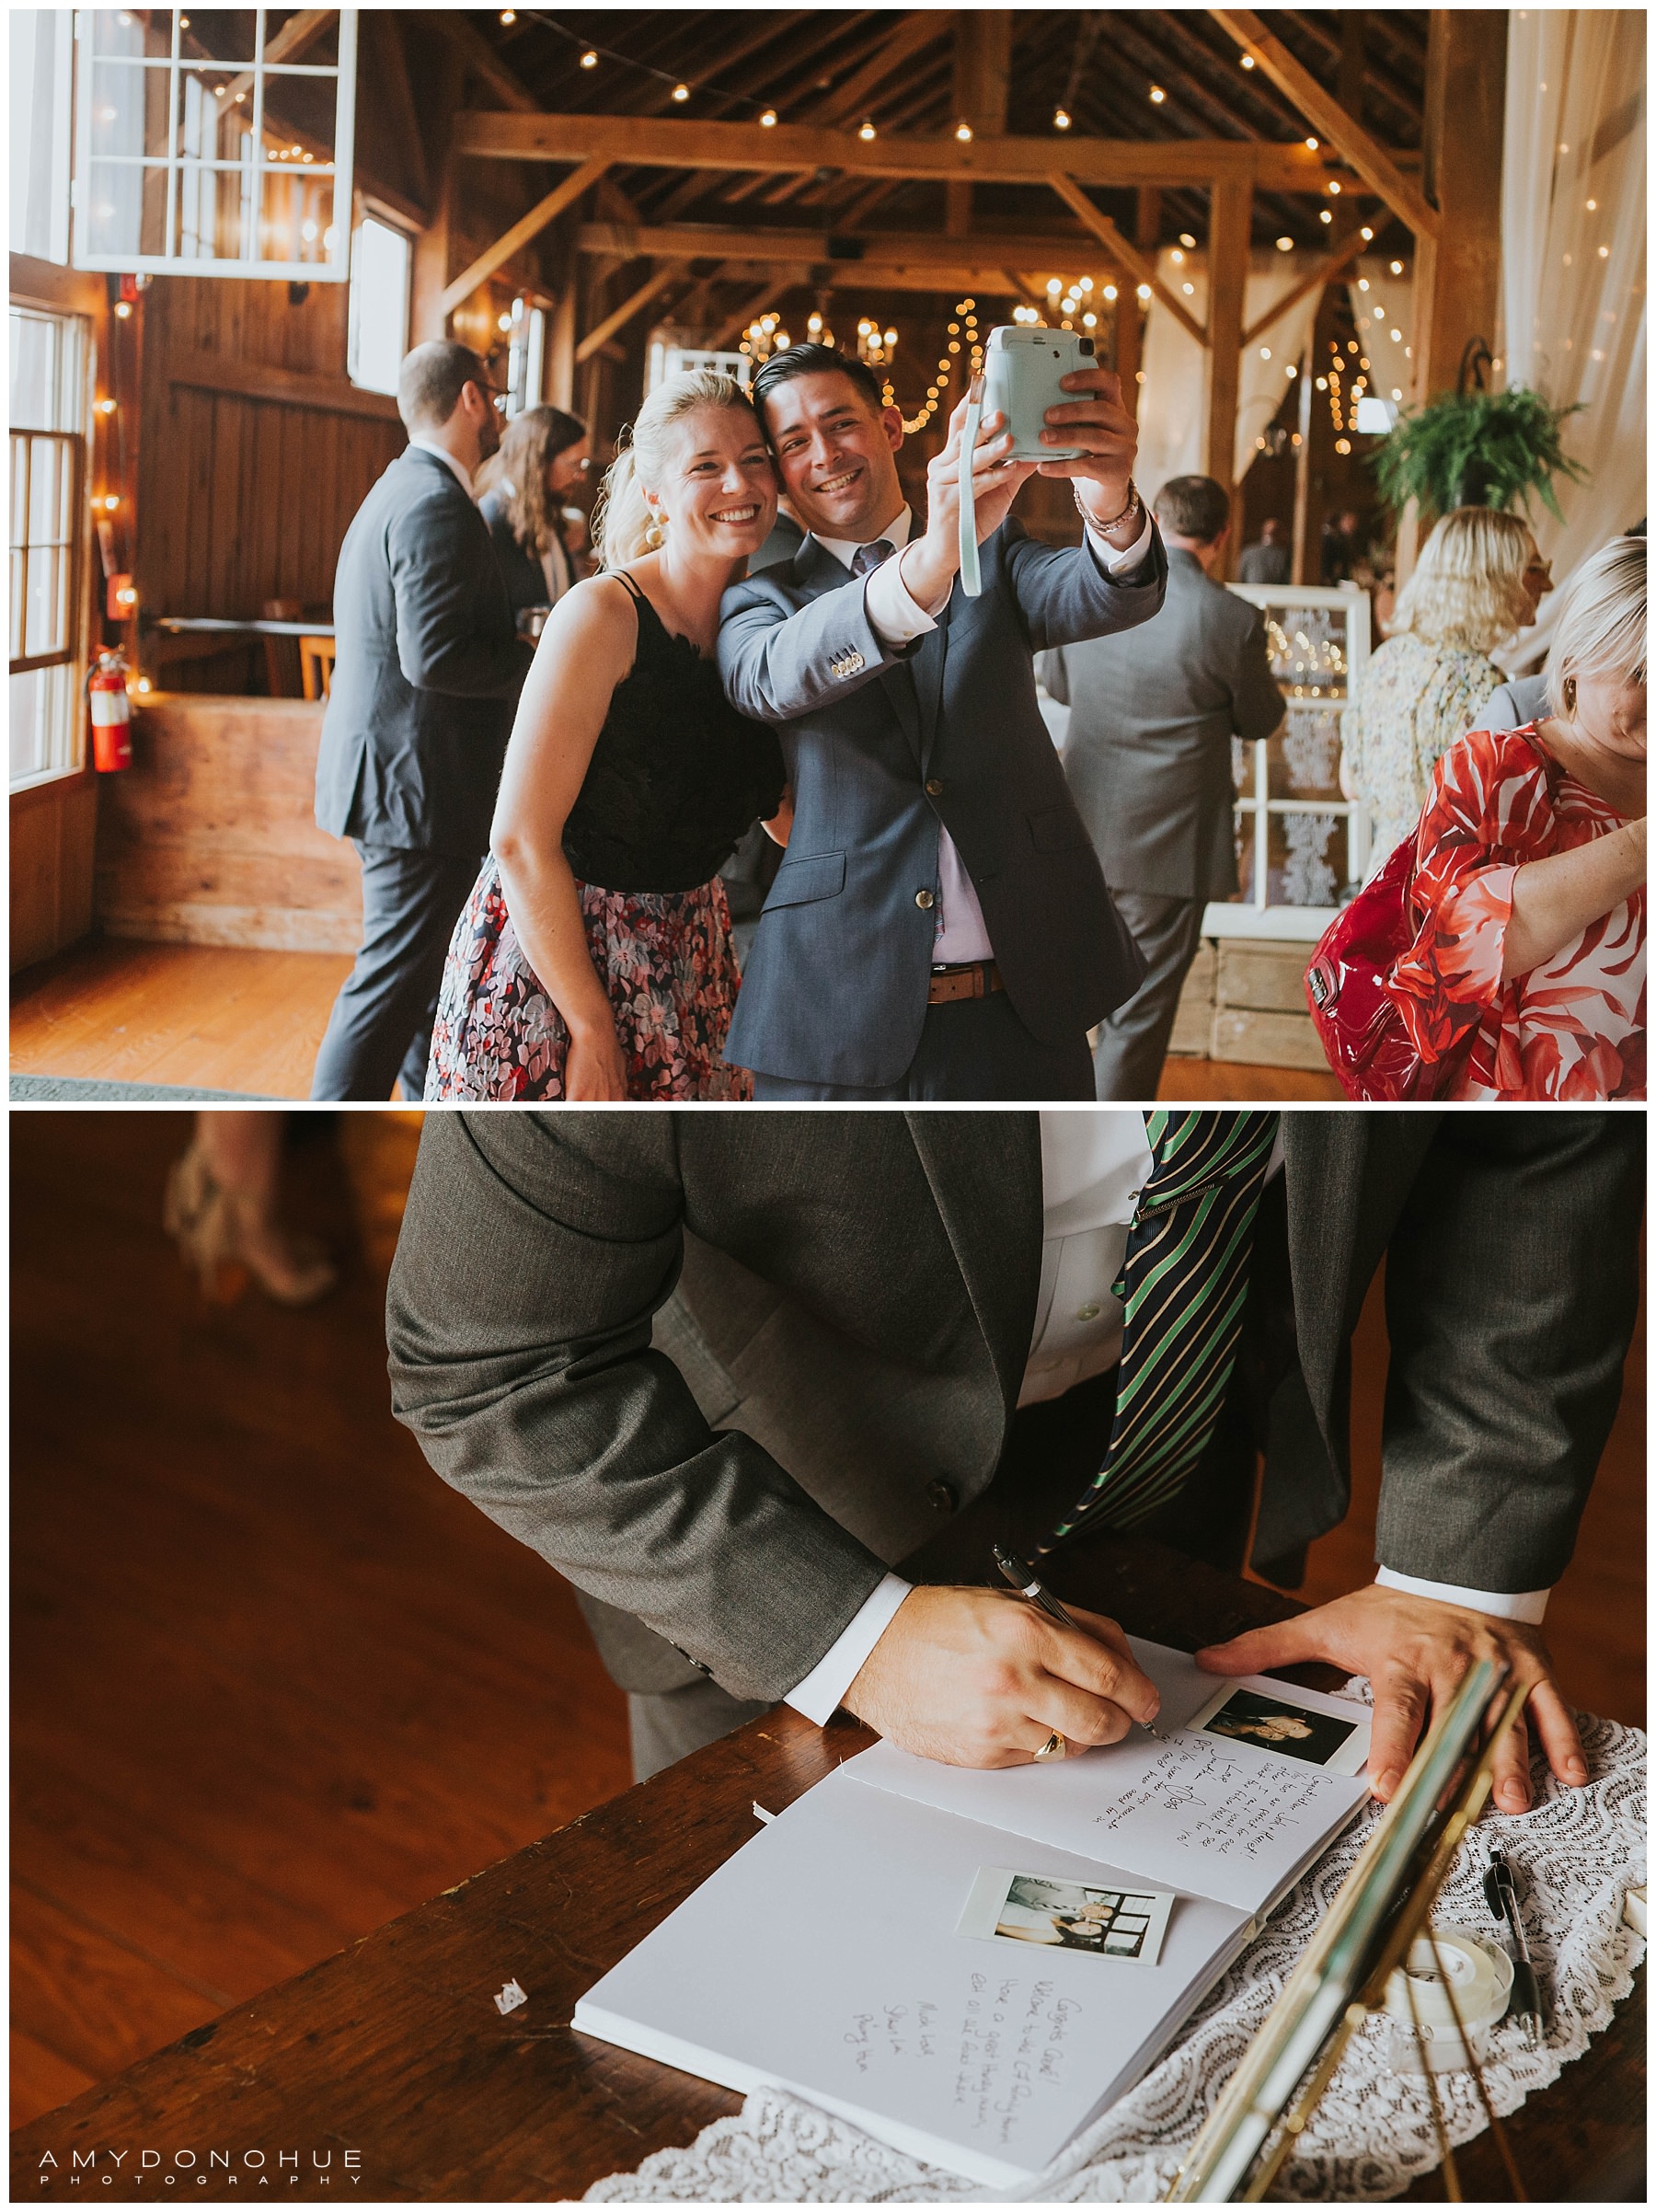 Wedding Reception | The Barn at Boyden Farms | Vermont Wedding Photographer | © Amy Donohue Photography